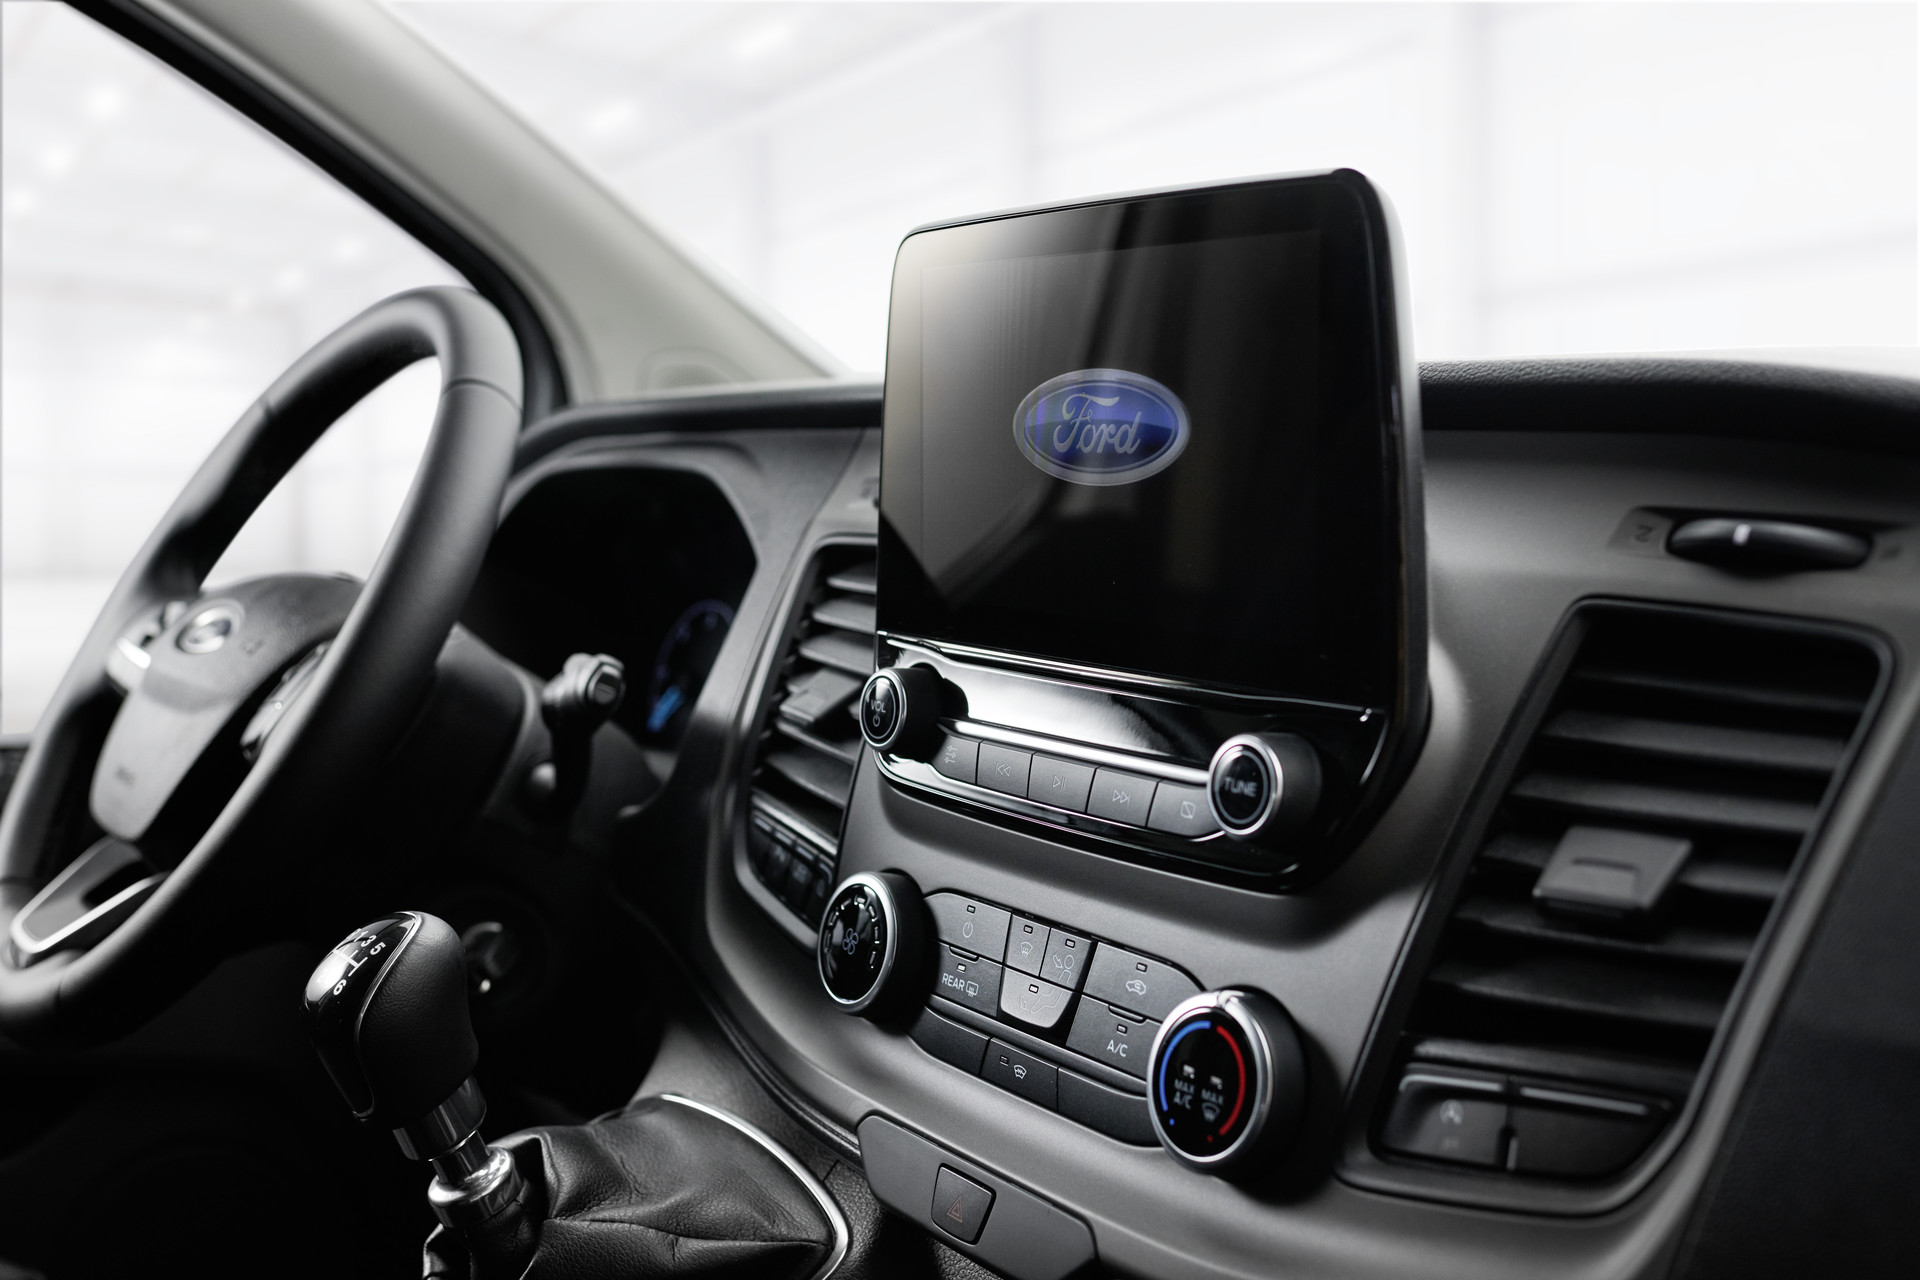 Système audio Ford avec DAB+, caméra de recul, climatisation avec filtre à poussière et à pollen.